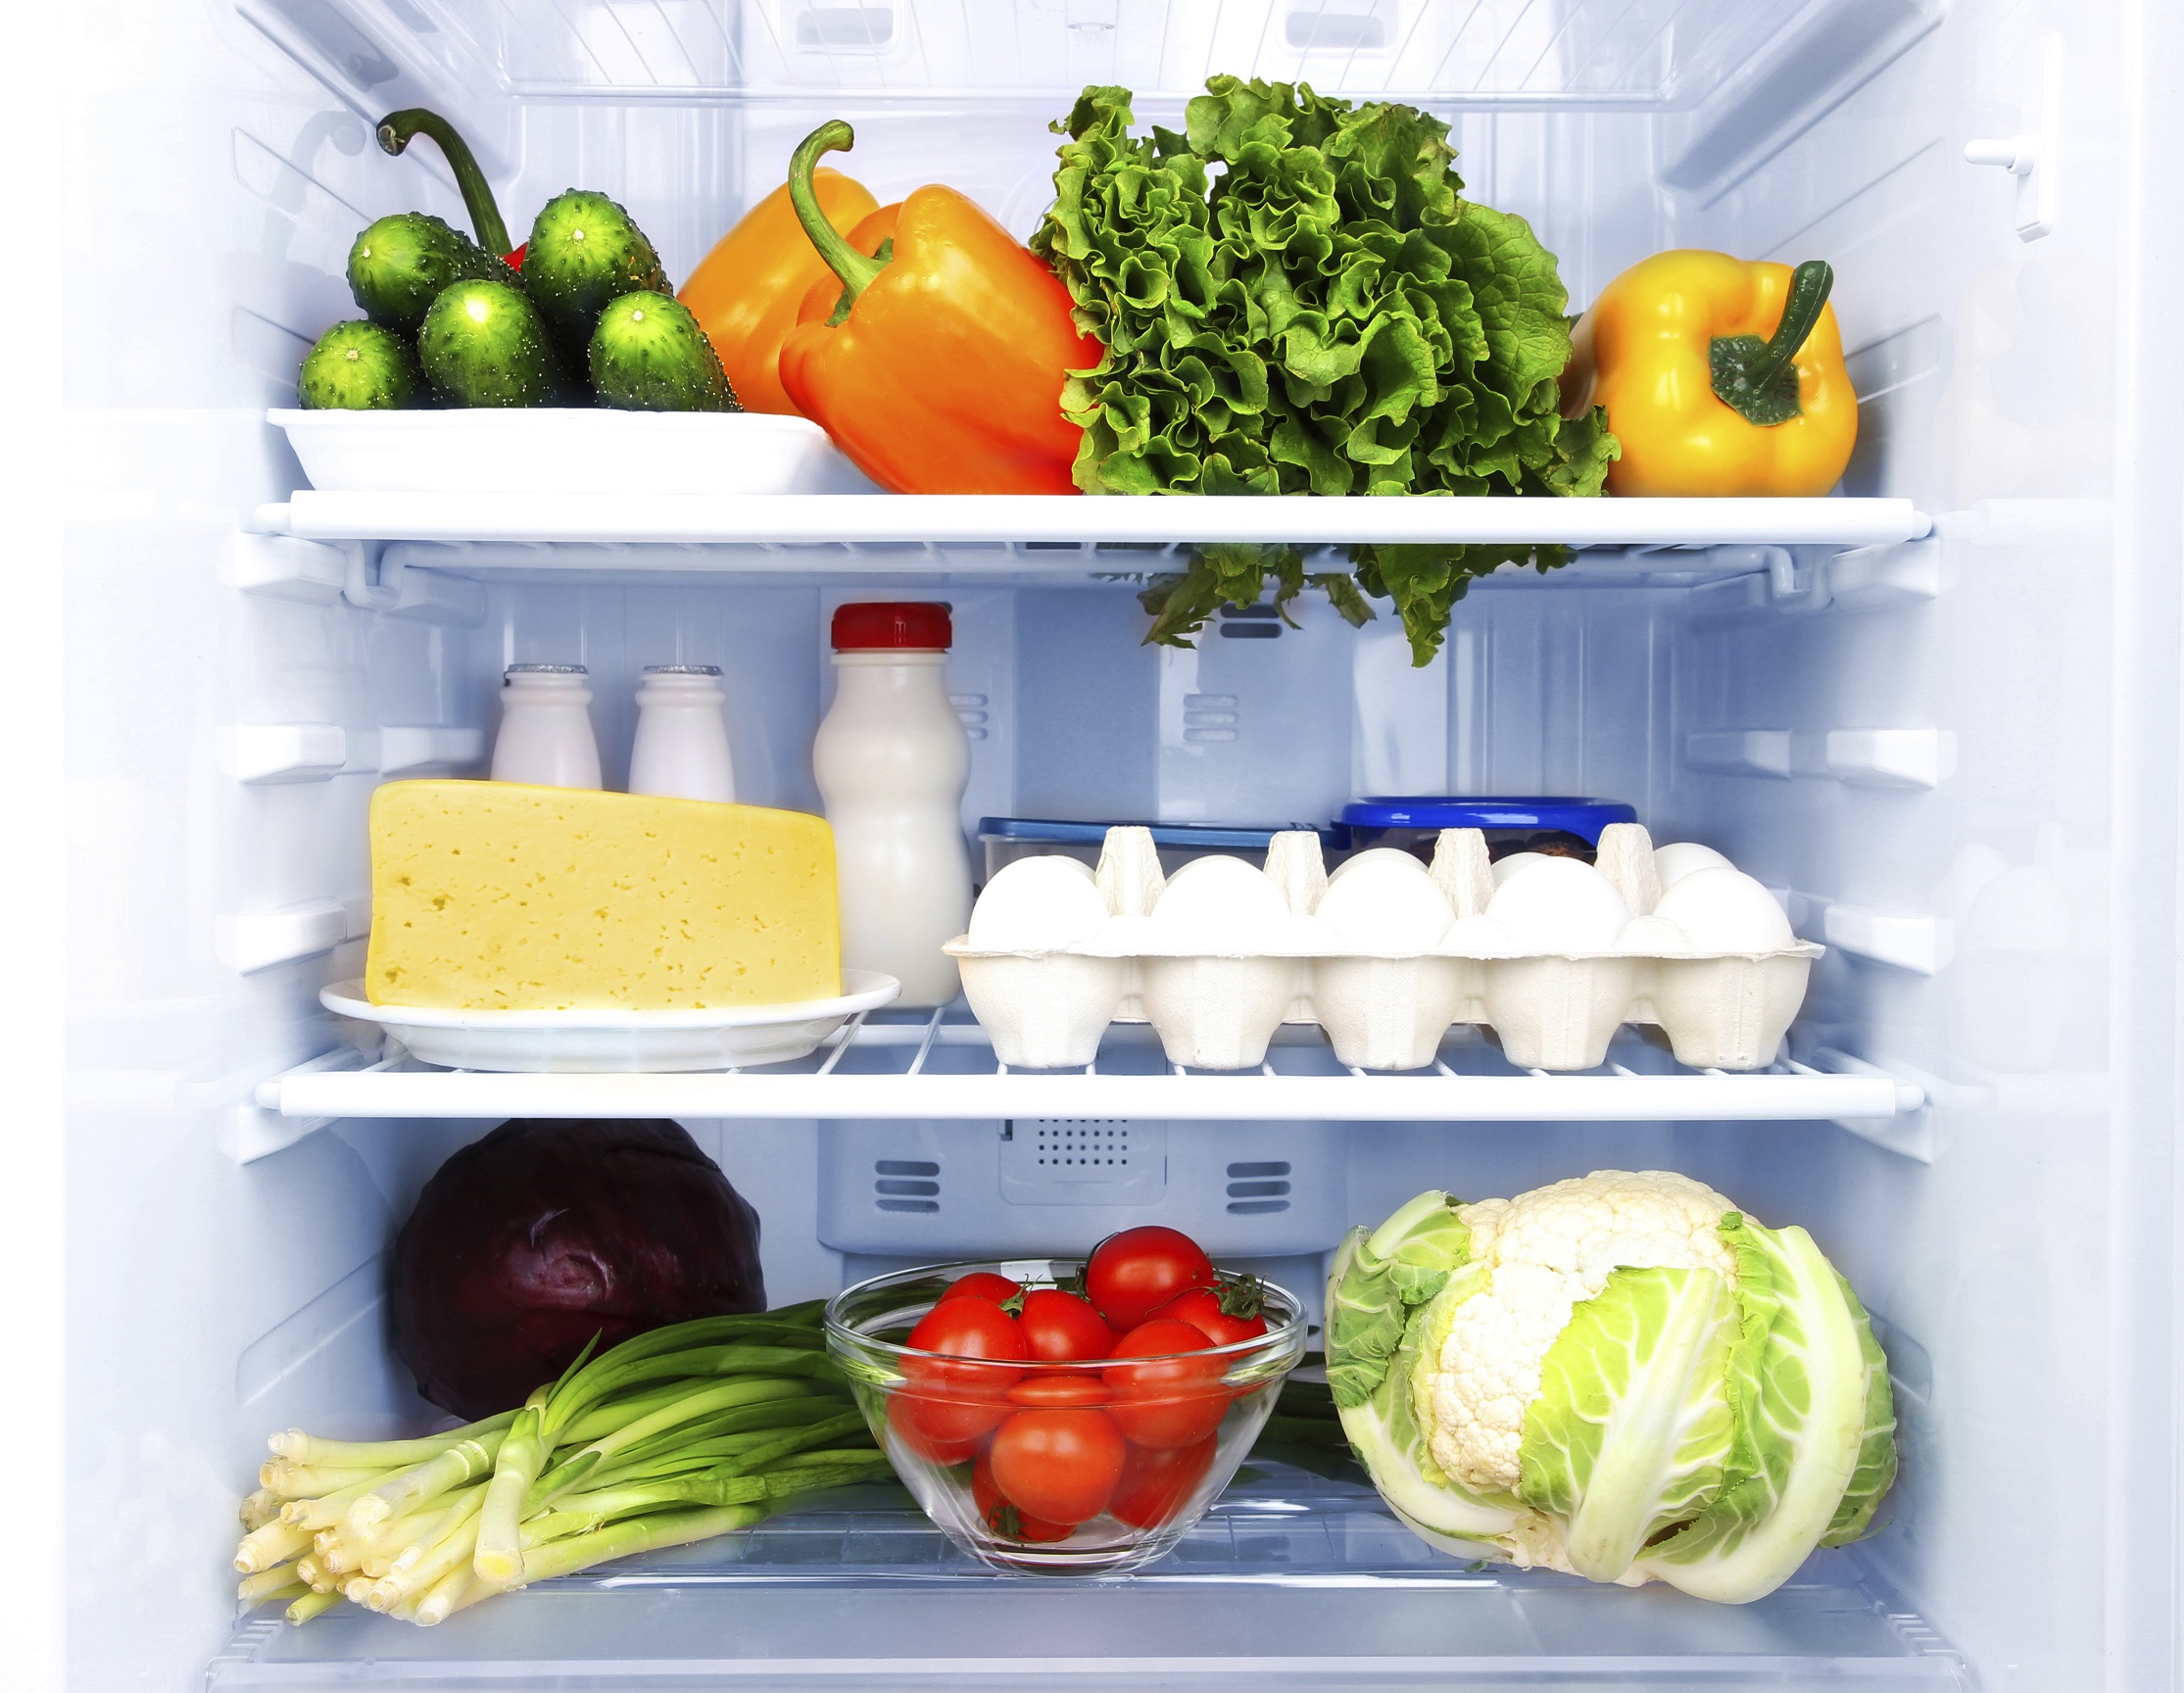 в холодильнике замерзают продукты на полках